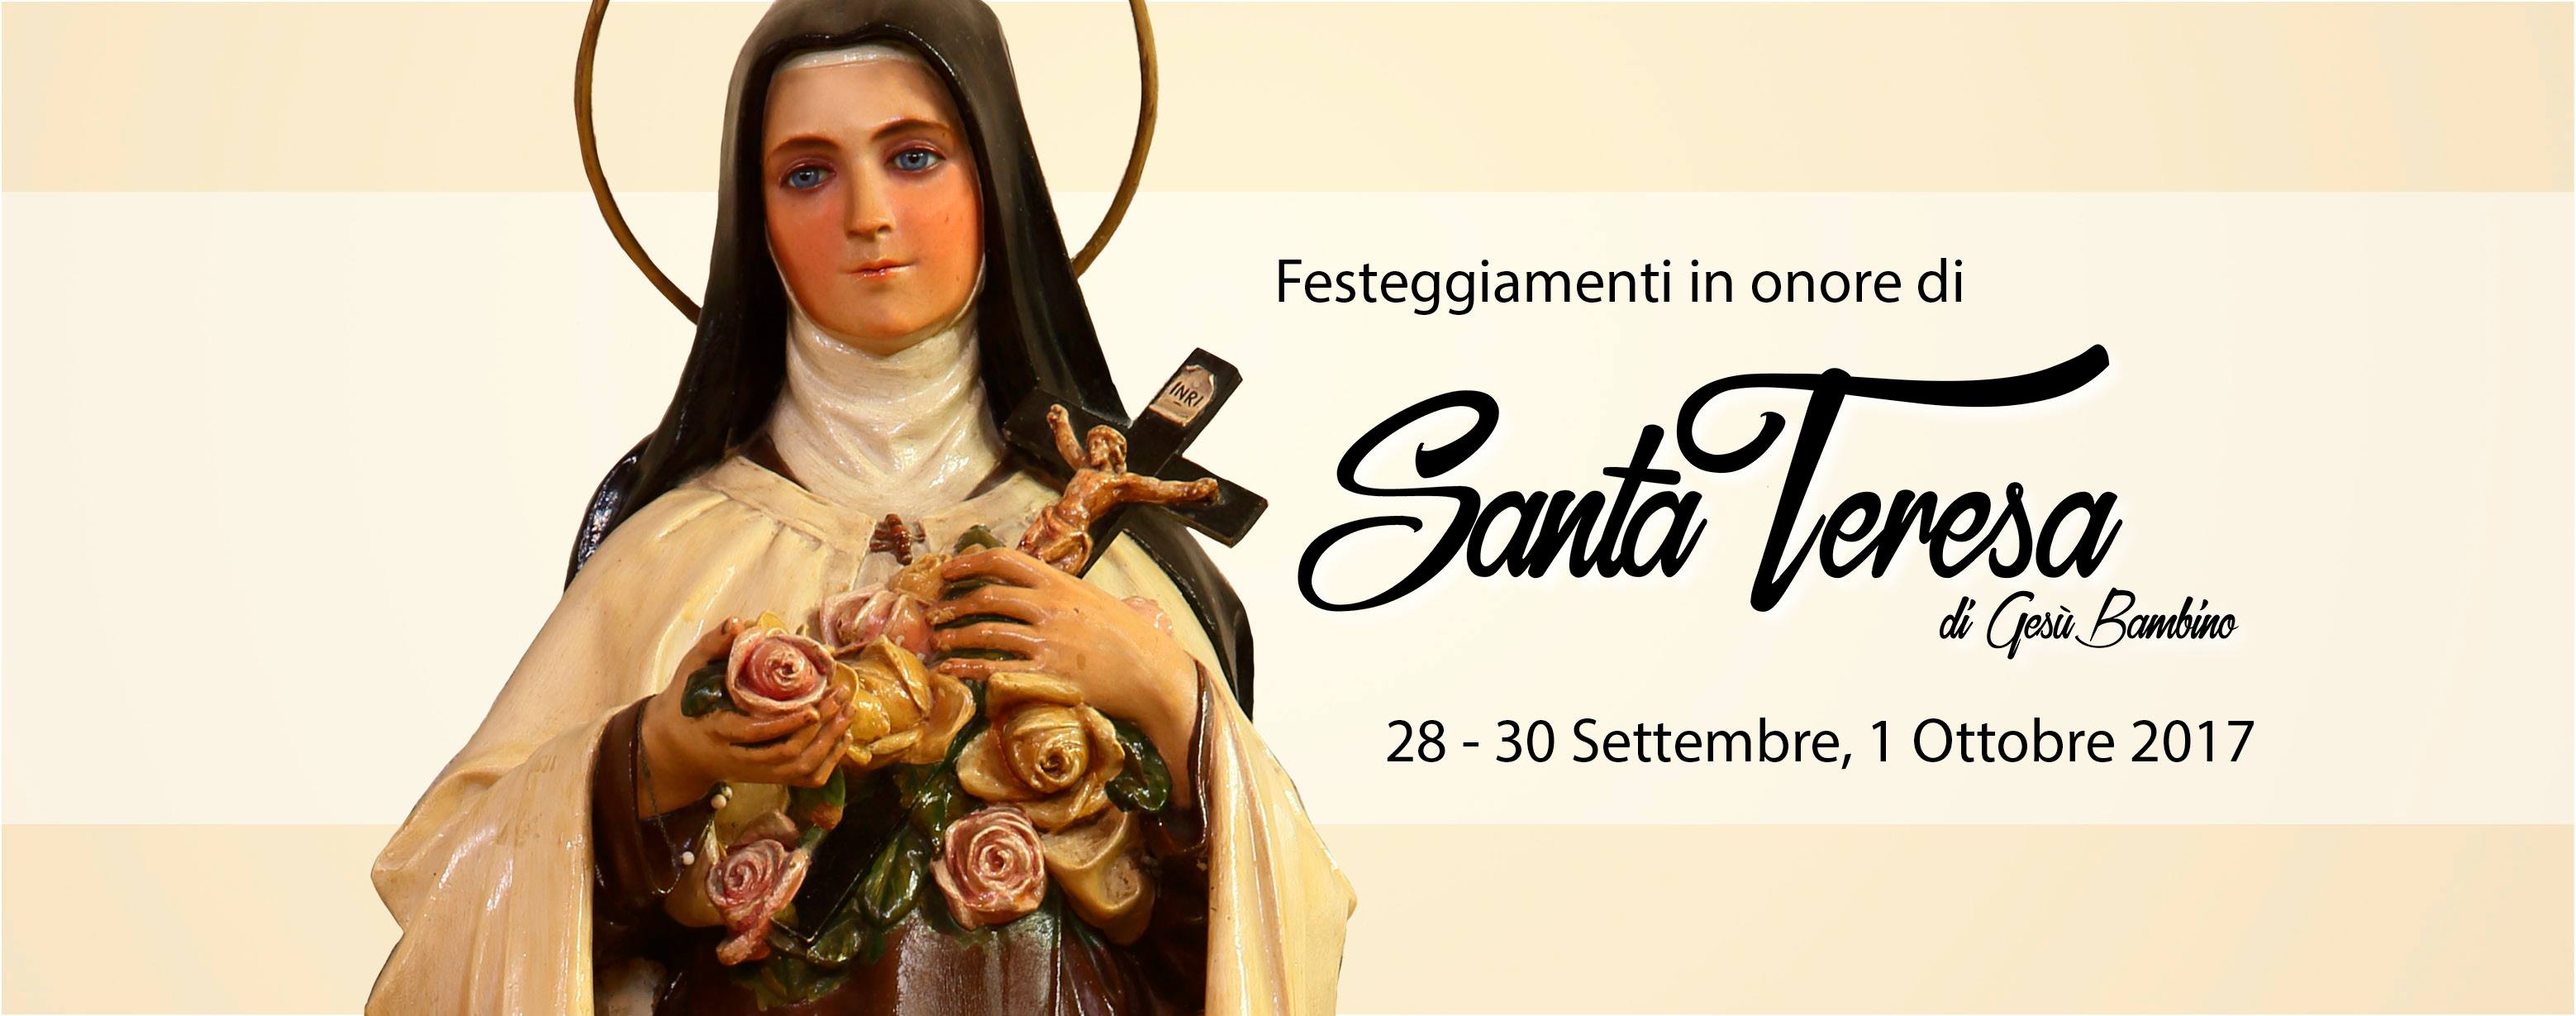 Il programma della festa di Santa Teresa di Gesù Bambino 2017